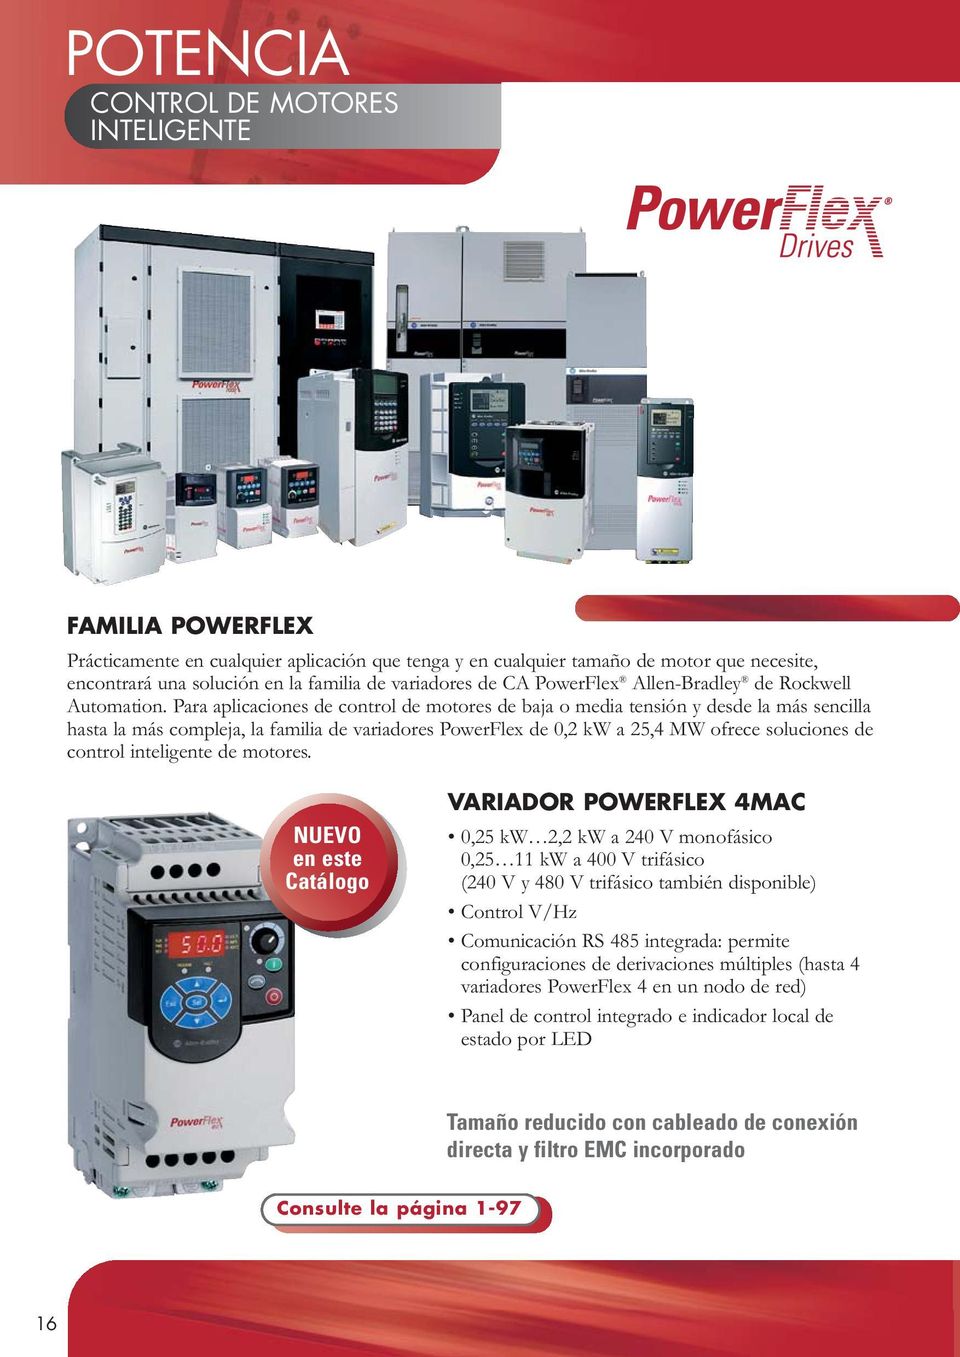 Para aplicaciones de control de motores de baja o media tensión y desde la más sencilla hasta la más compleja, la familia de variadores PowerFlex de 0,2 kw a 25,4 MW ofrece soluciones de control